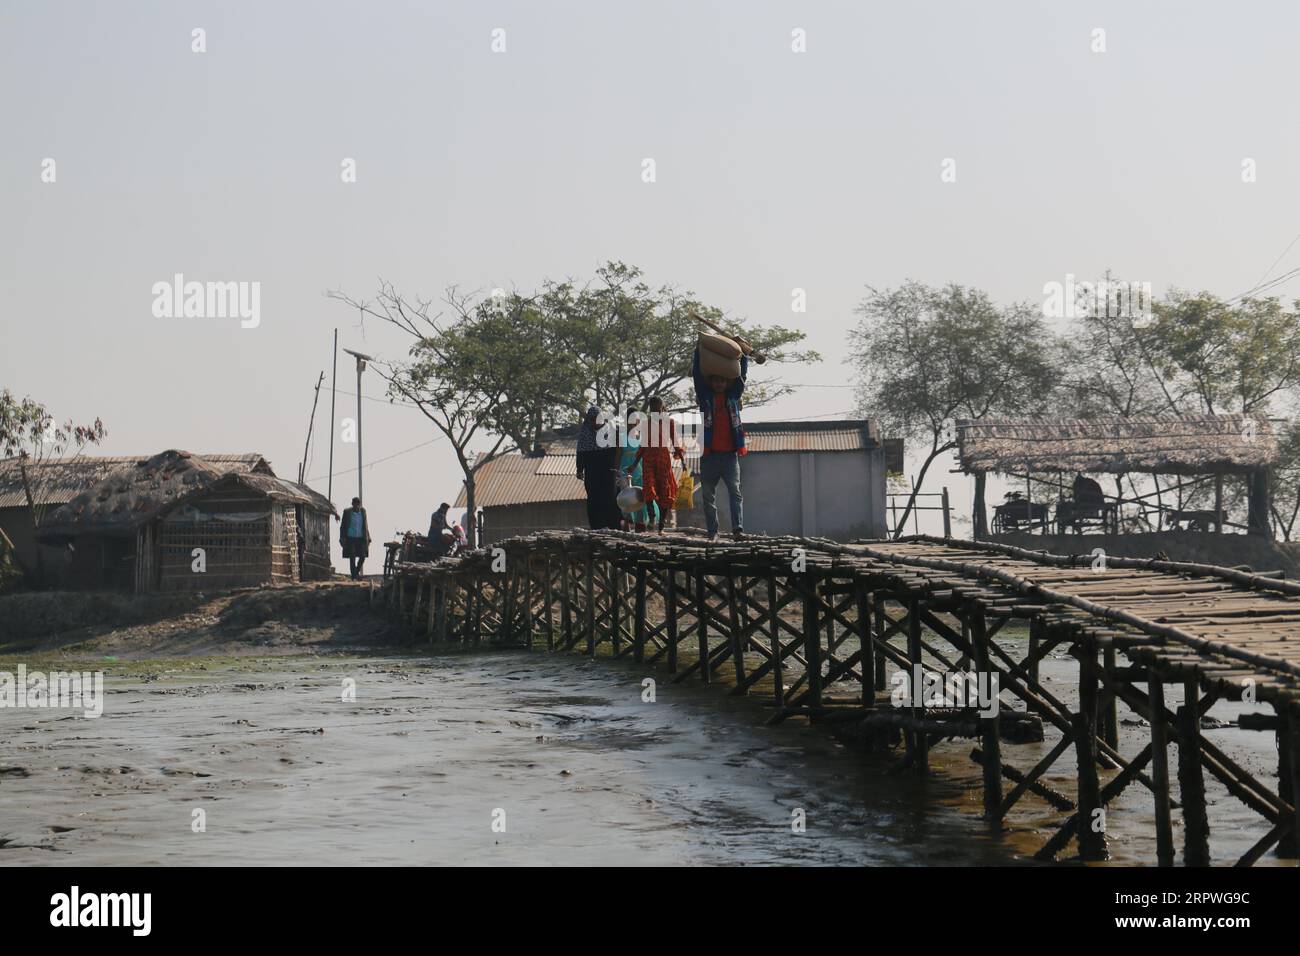 Des villageois marchent sur un pont de bambou pour traverser une rivière au Bangladesh le 5 janvier 2021. Des millions de personnes sont touchées par la crise climatique dans les ceintures côtières du Bangladesh. Banque D'Images